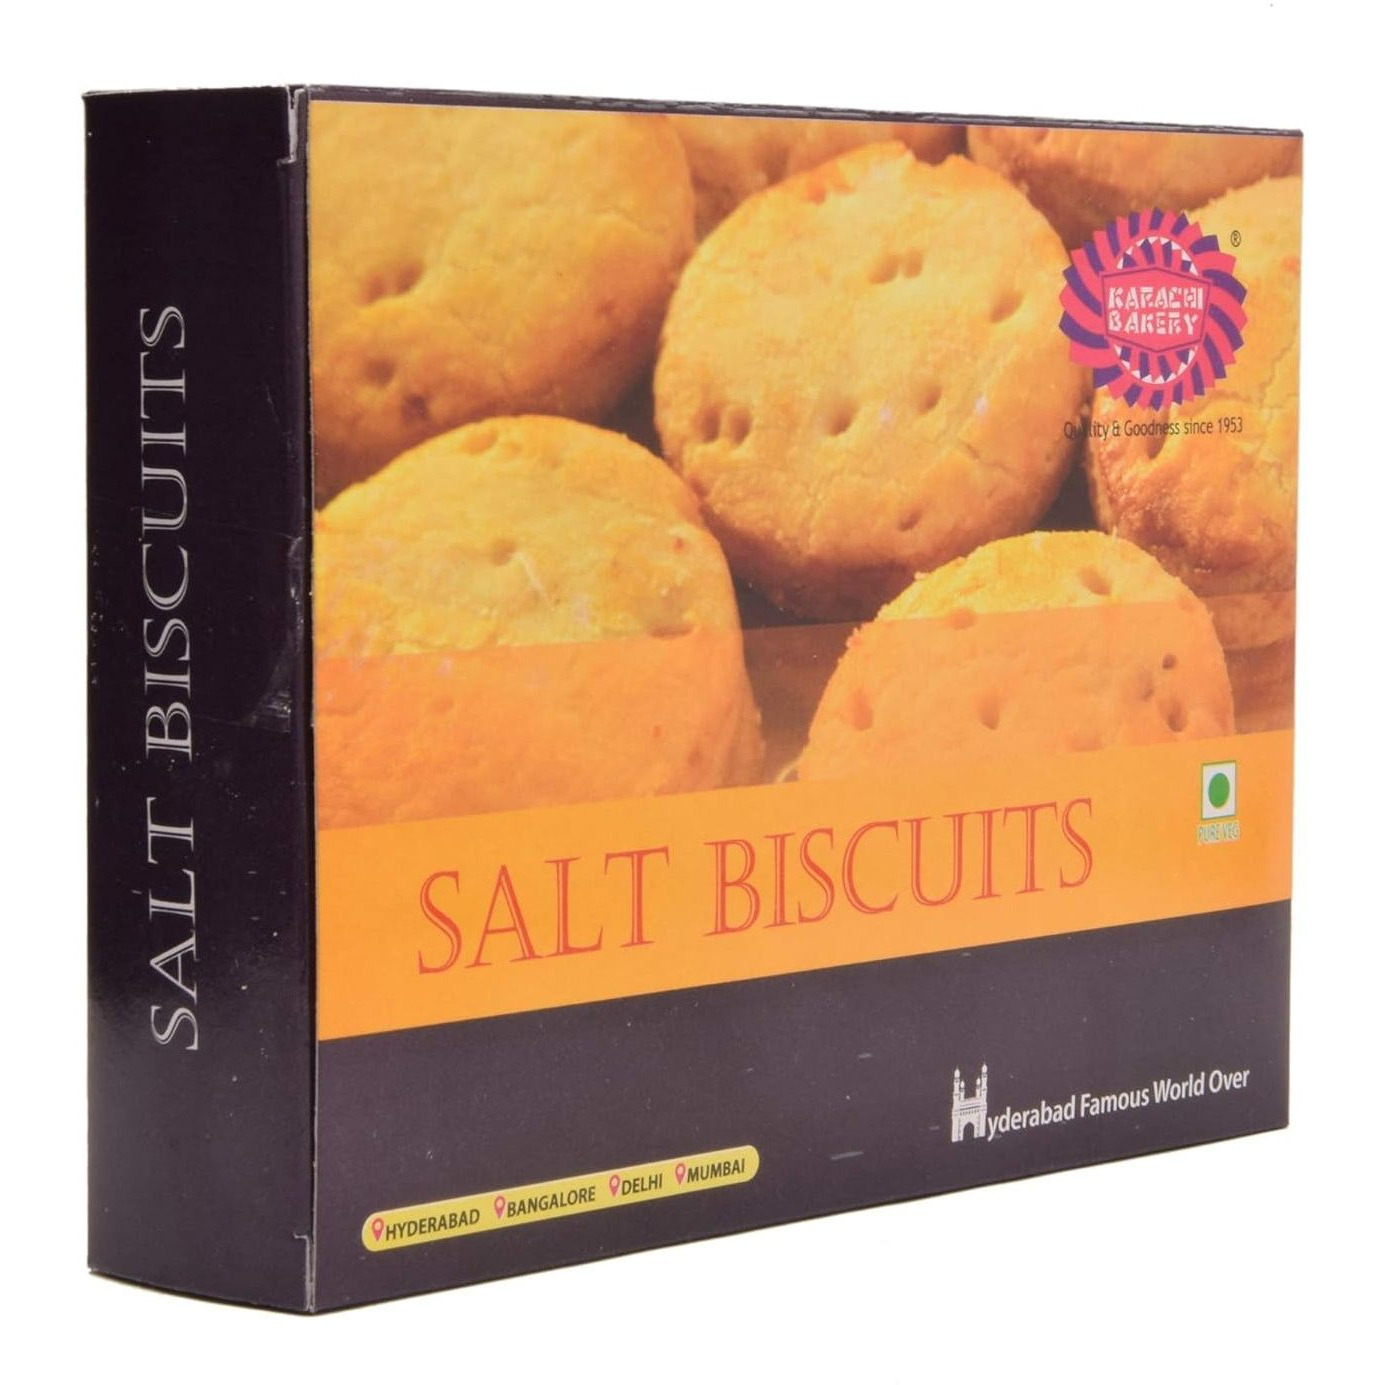 Pack of 5 - Karachi Bakery Salt Biscuits - 400 Gm (14.11 Oz)